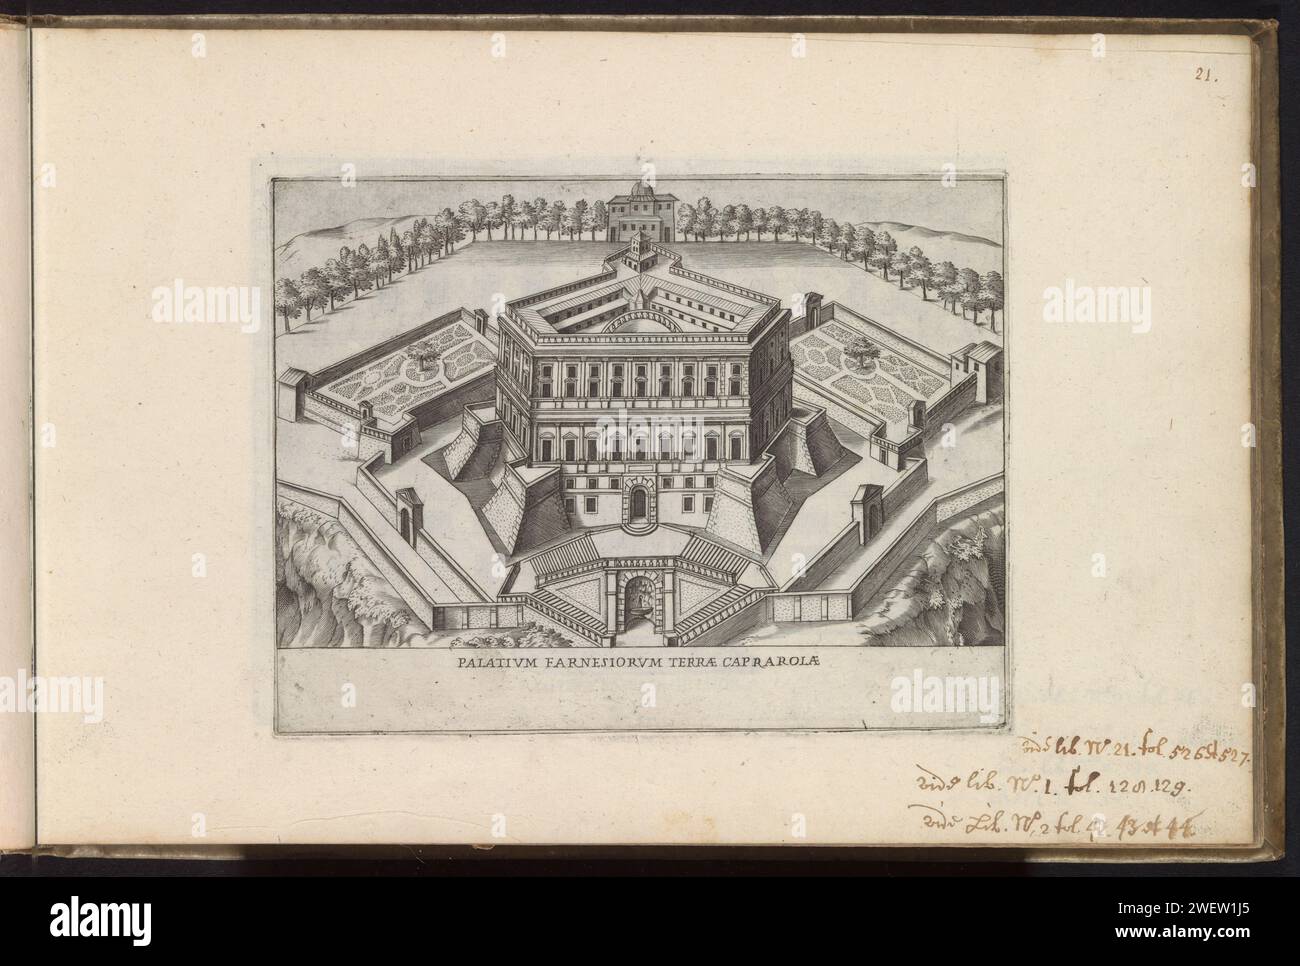 Gezicht op villa Farnese te Caprarola, Giacomo Lauro, 1638 Print fa parte di un album. Villa Farnese con incisione di carta Foto Stock